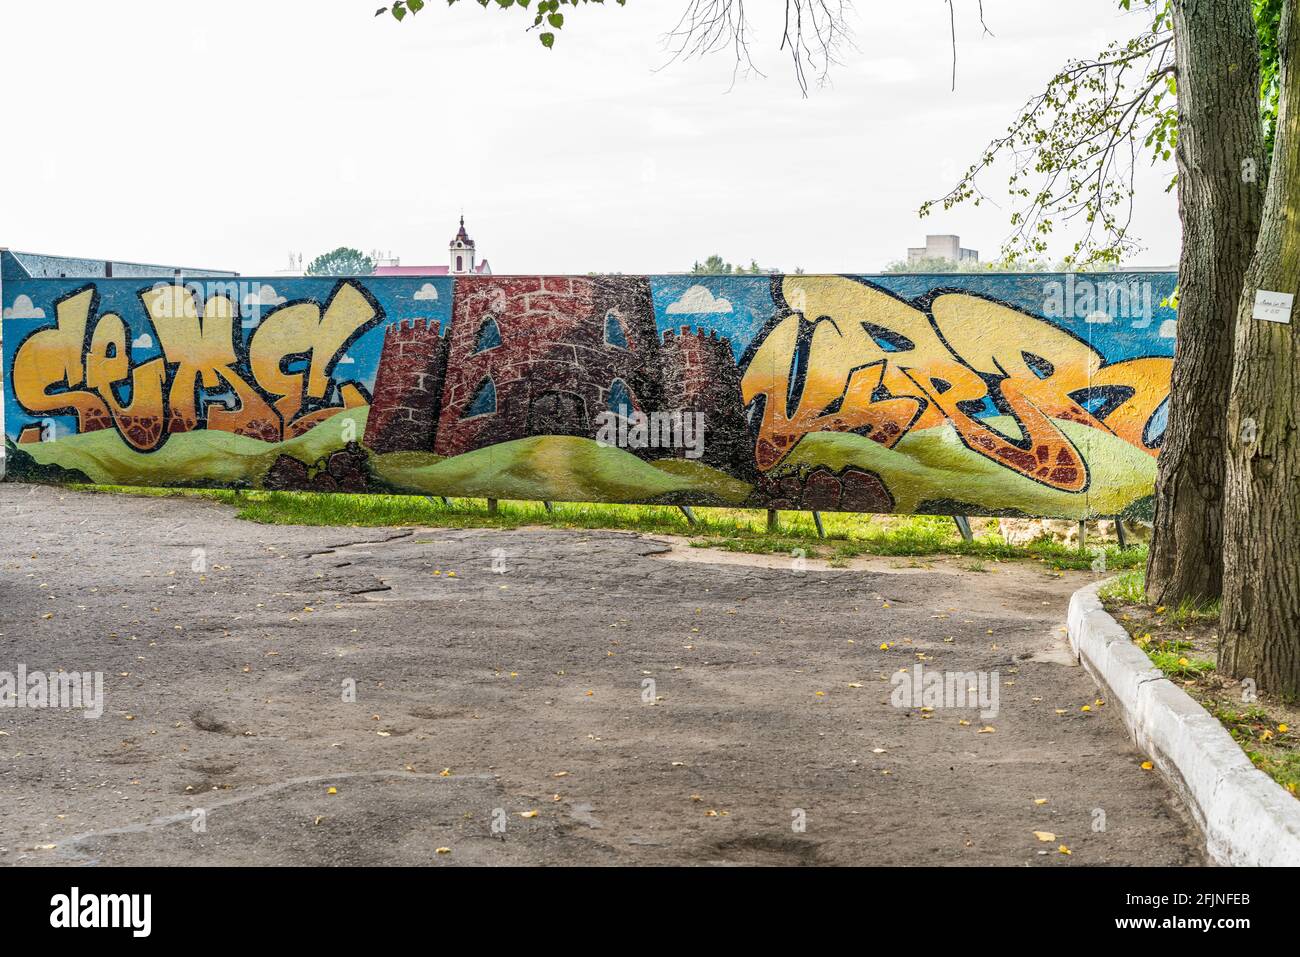 Grodno, Belarus - September 2, 2017: street art graffiti on wall Stock Photo